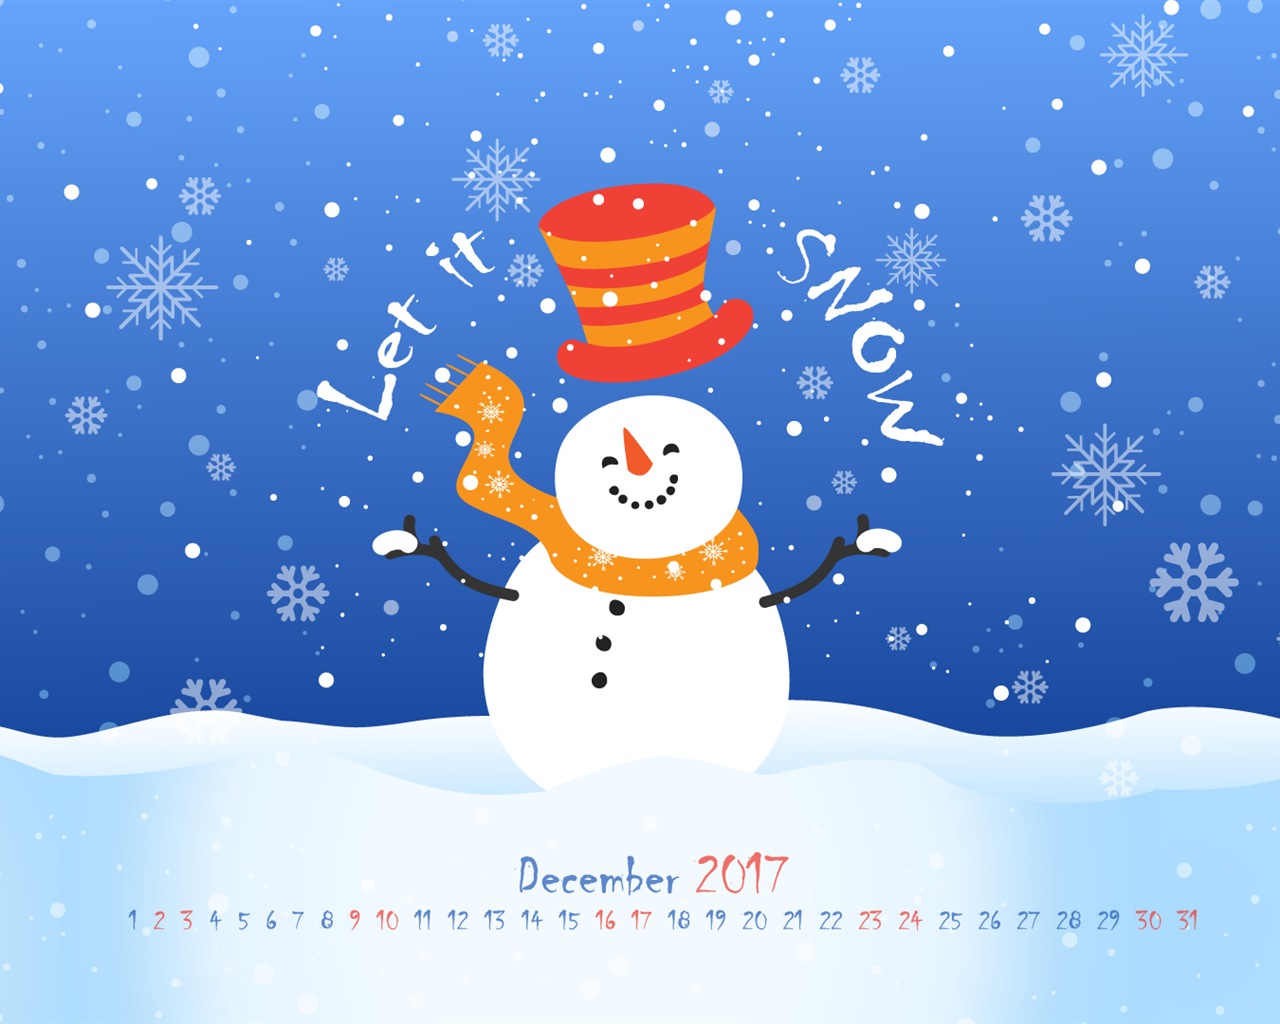 December 2017 Calendar Wallpaper #16 - 1280x1024